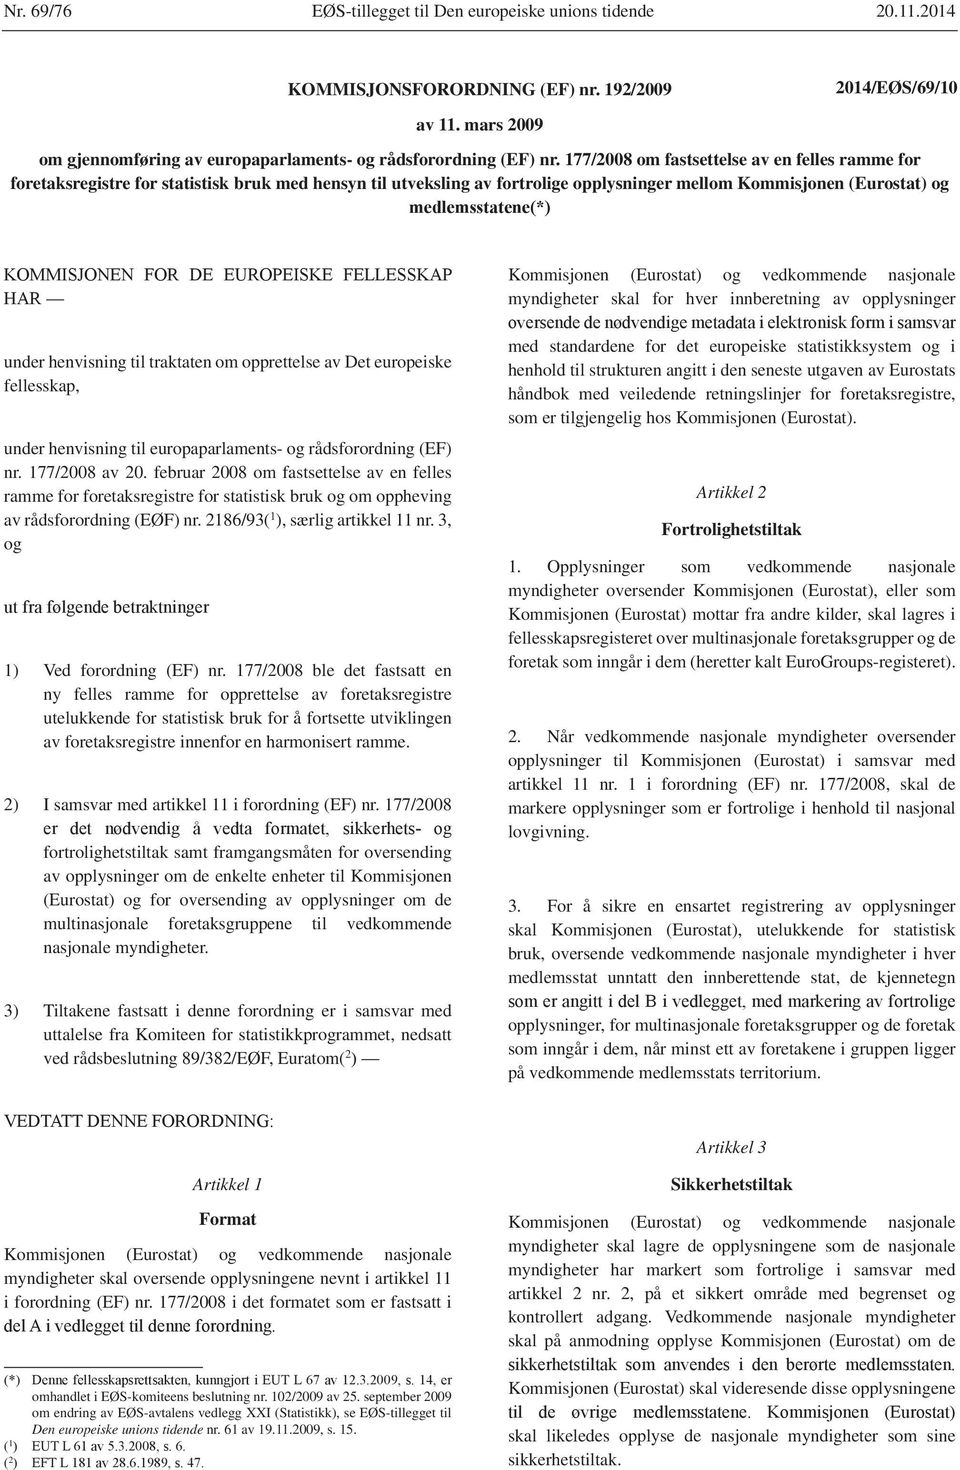 177/2008 om fastsettelse av en felles ramme for foretaksregistre for statistisk bruk med hensyn til utveksling av fortrolige opplysninger mellom Kommisjonen (Eurostat) og under henvisning til